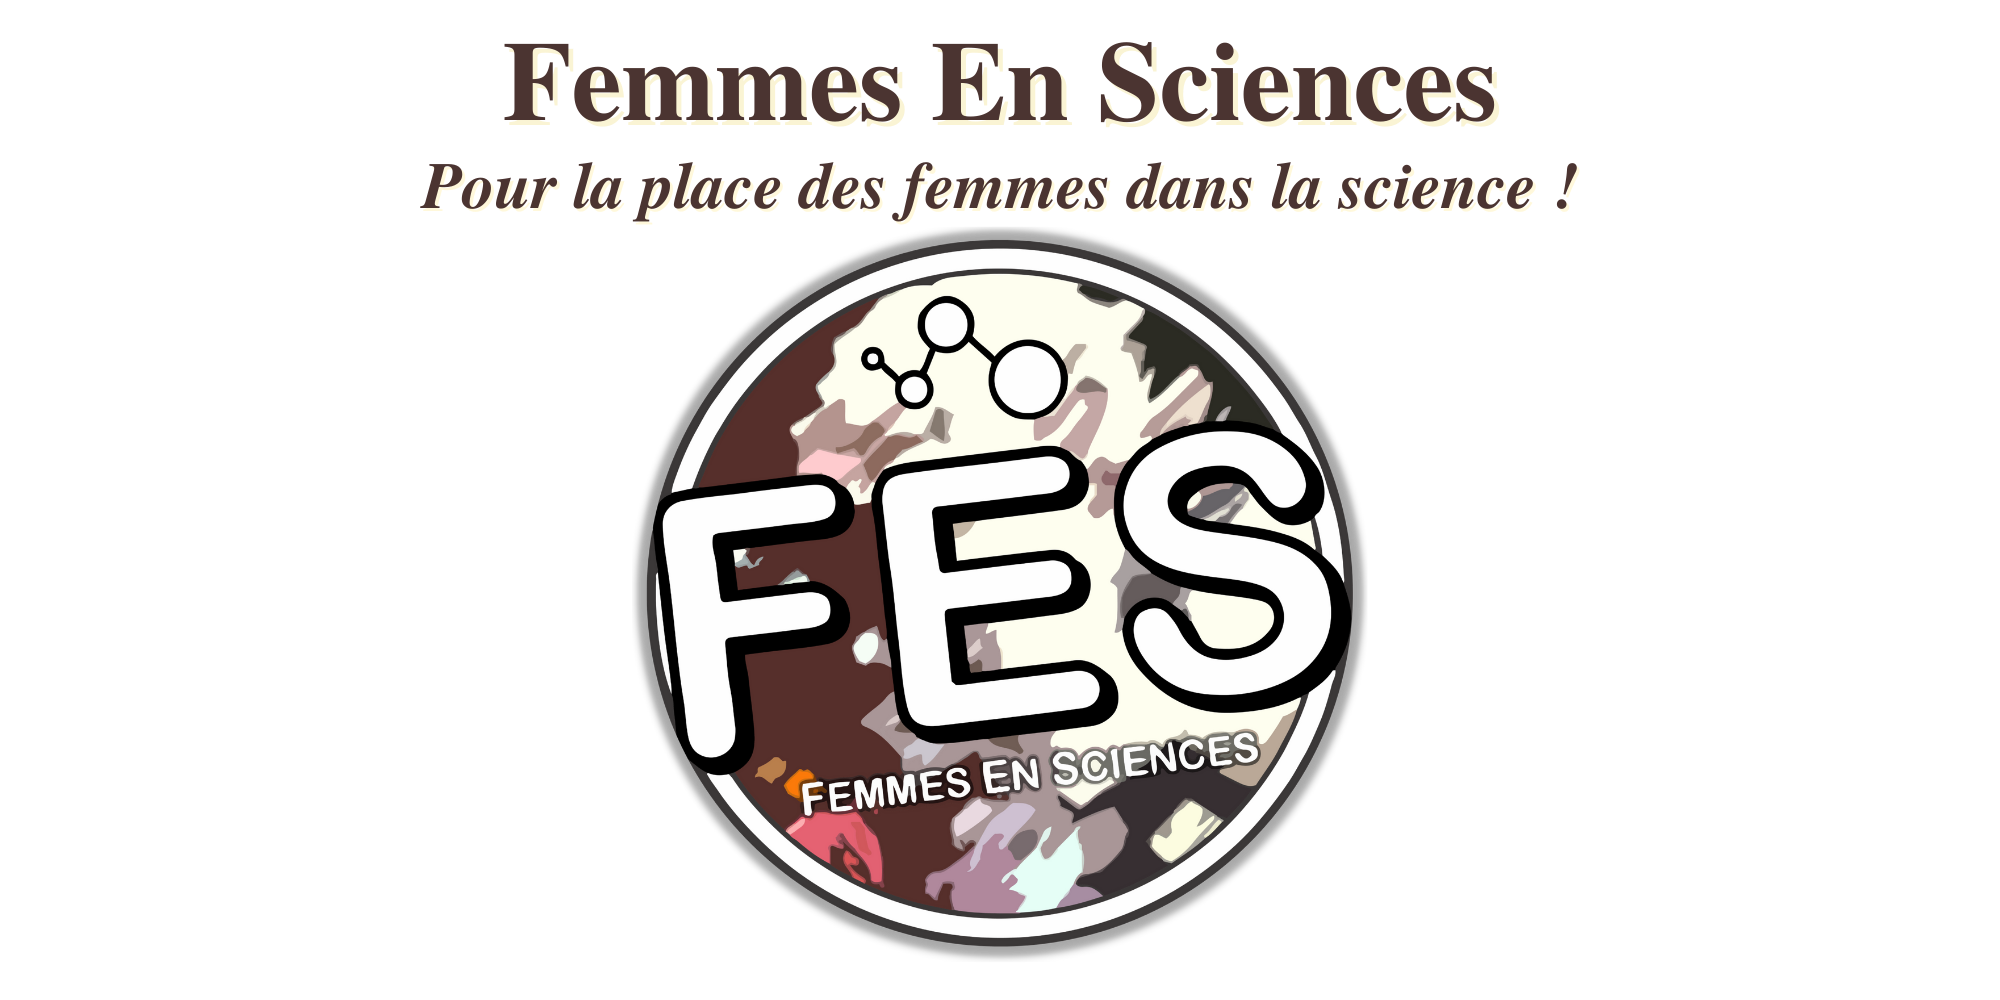 vignette congres femmes science